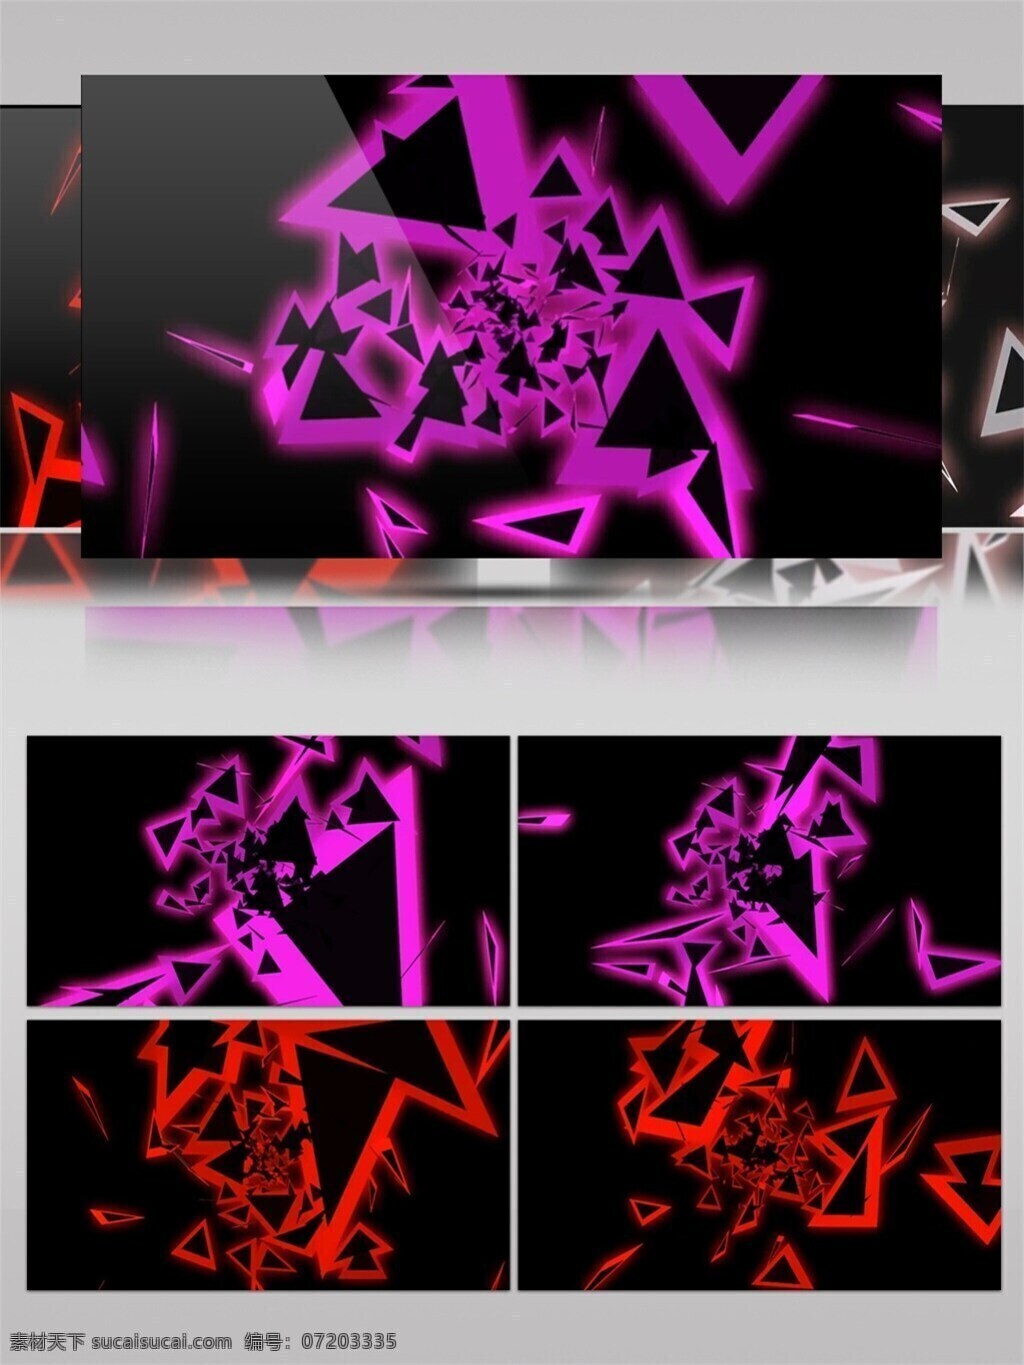 紫红色 几何 高清 视频 壁纸图案 动态展示 房间装饰 背景 立体几何 特效 炫酷变色 装饰风格 紫红色几何